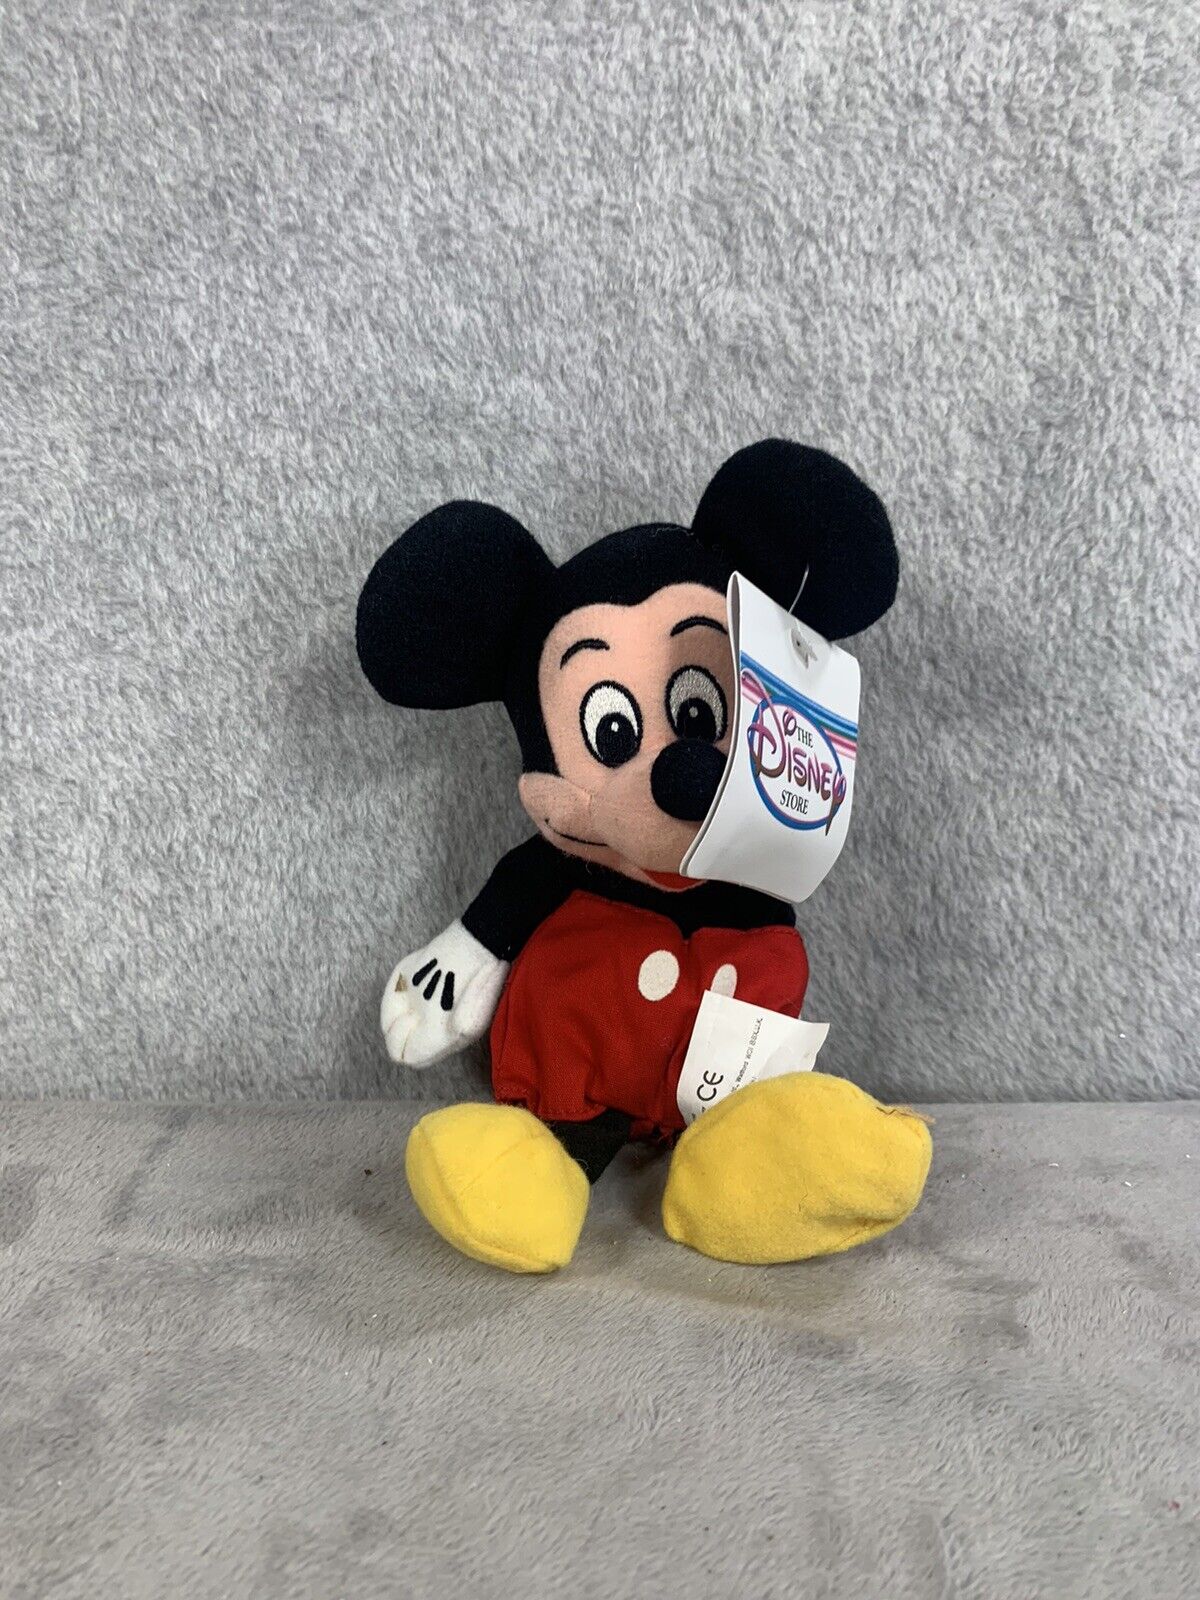 The Disney Store Mickey Mouse Mini Bean Bag Plush Toy